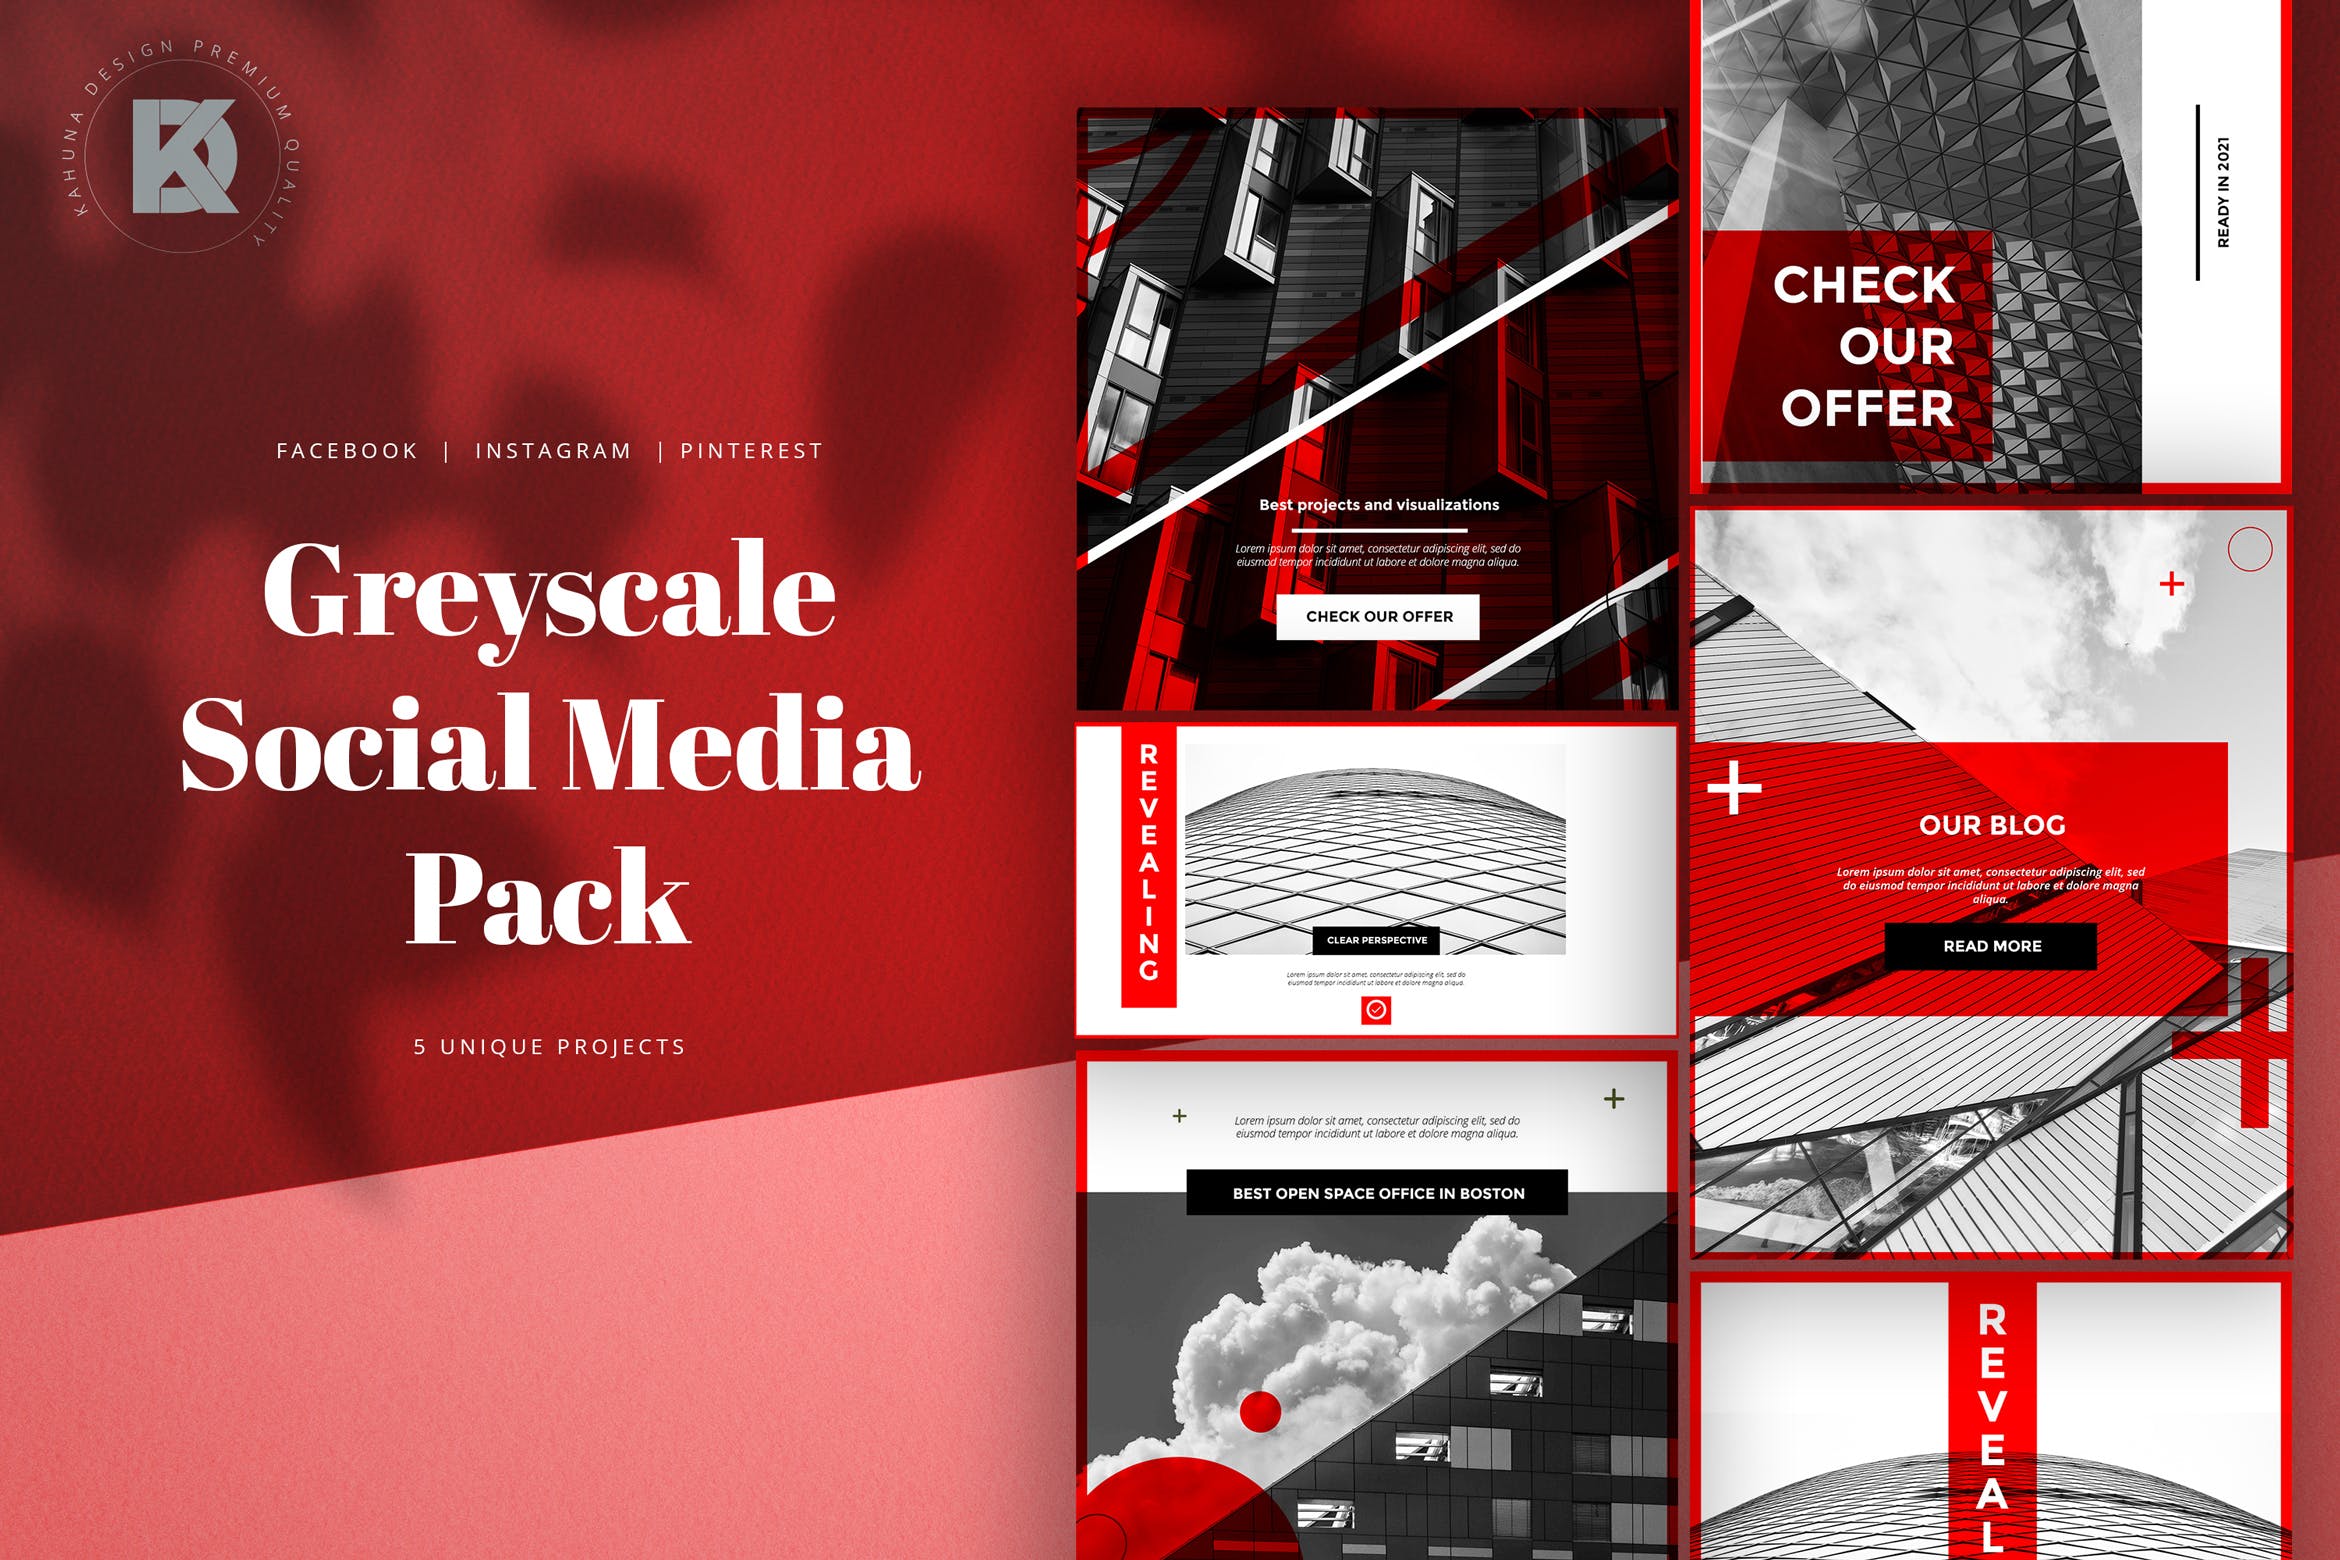 灰度红创意社交媒体蚂蚁素材精选广告模板素材 Greyscale Red Social Media Pack插图